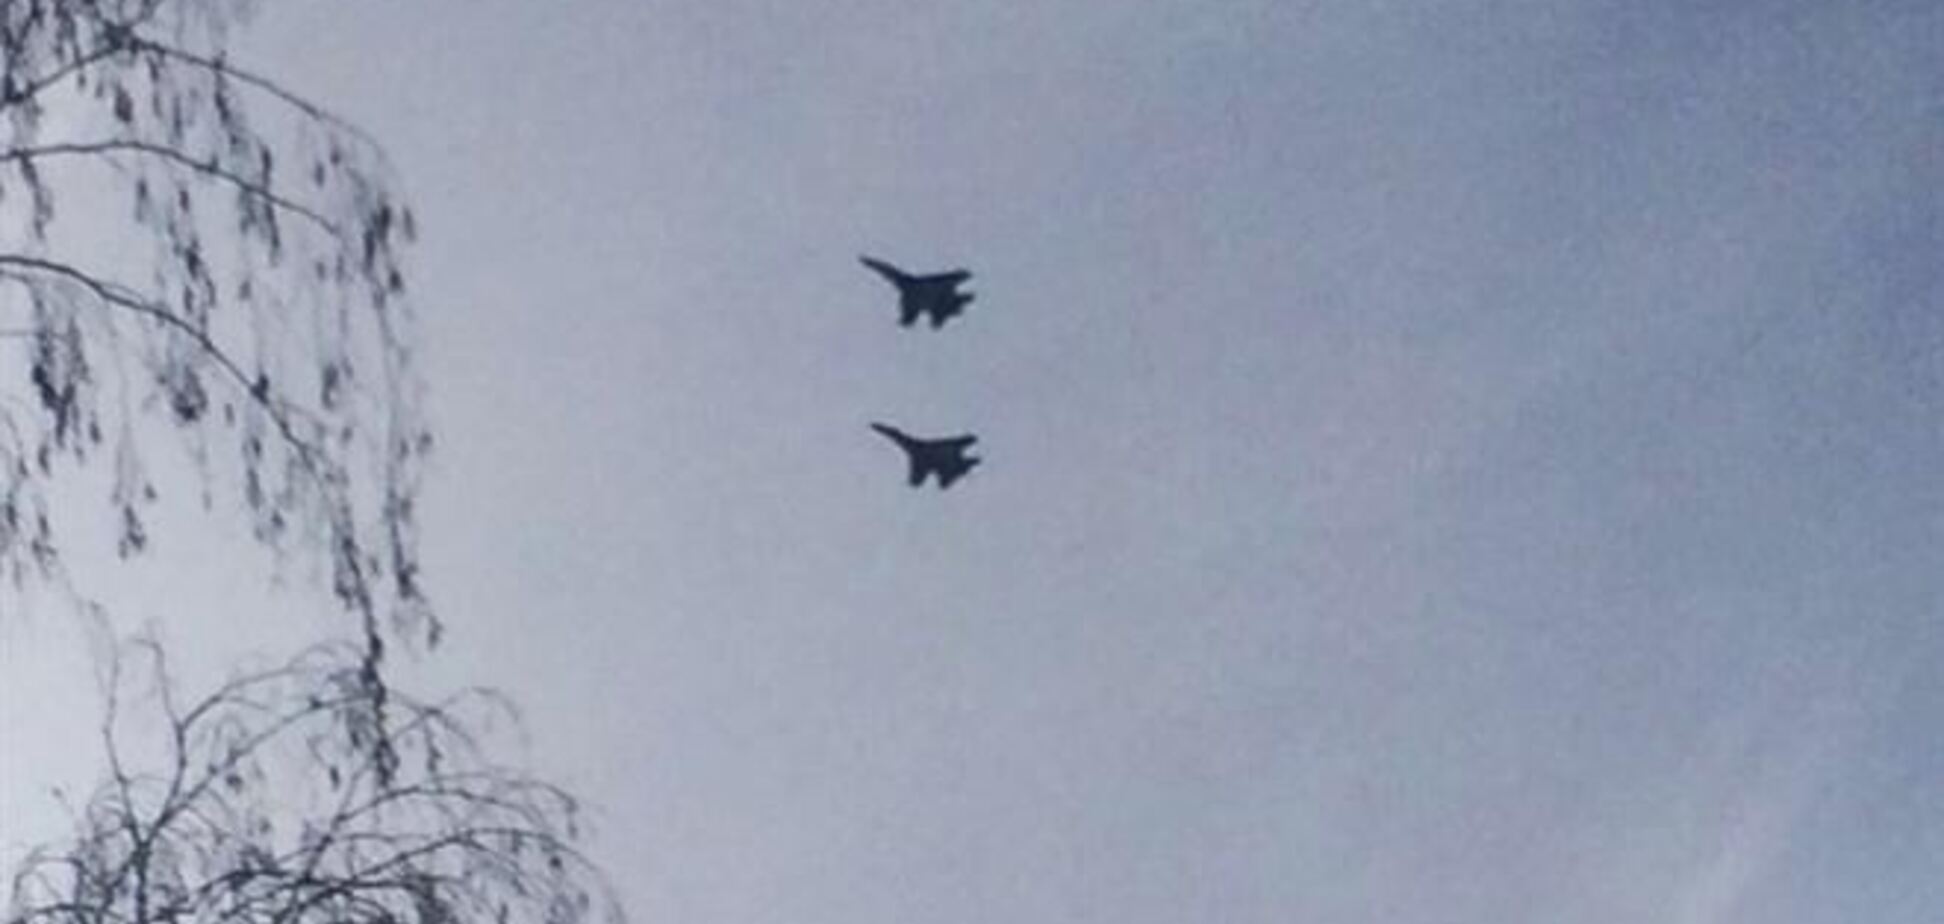 В небе над Донецком заметили два истребителя. В Минобороны говорят об изучении обстановки